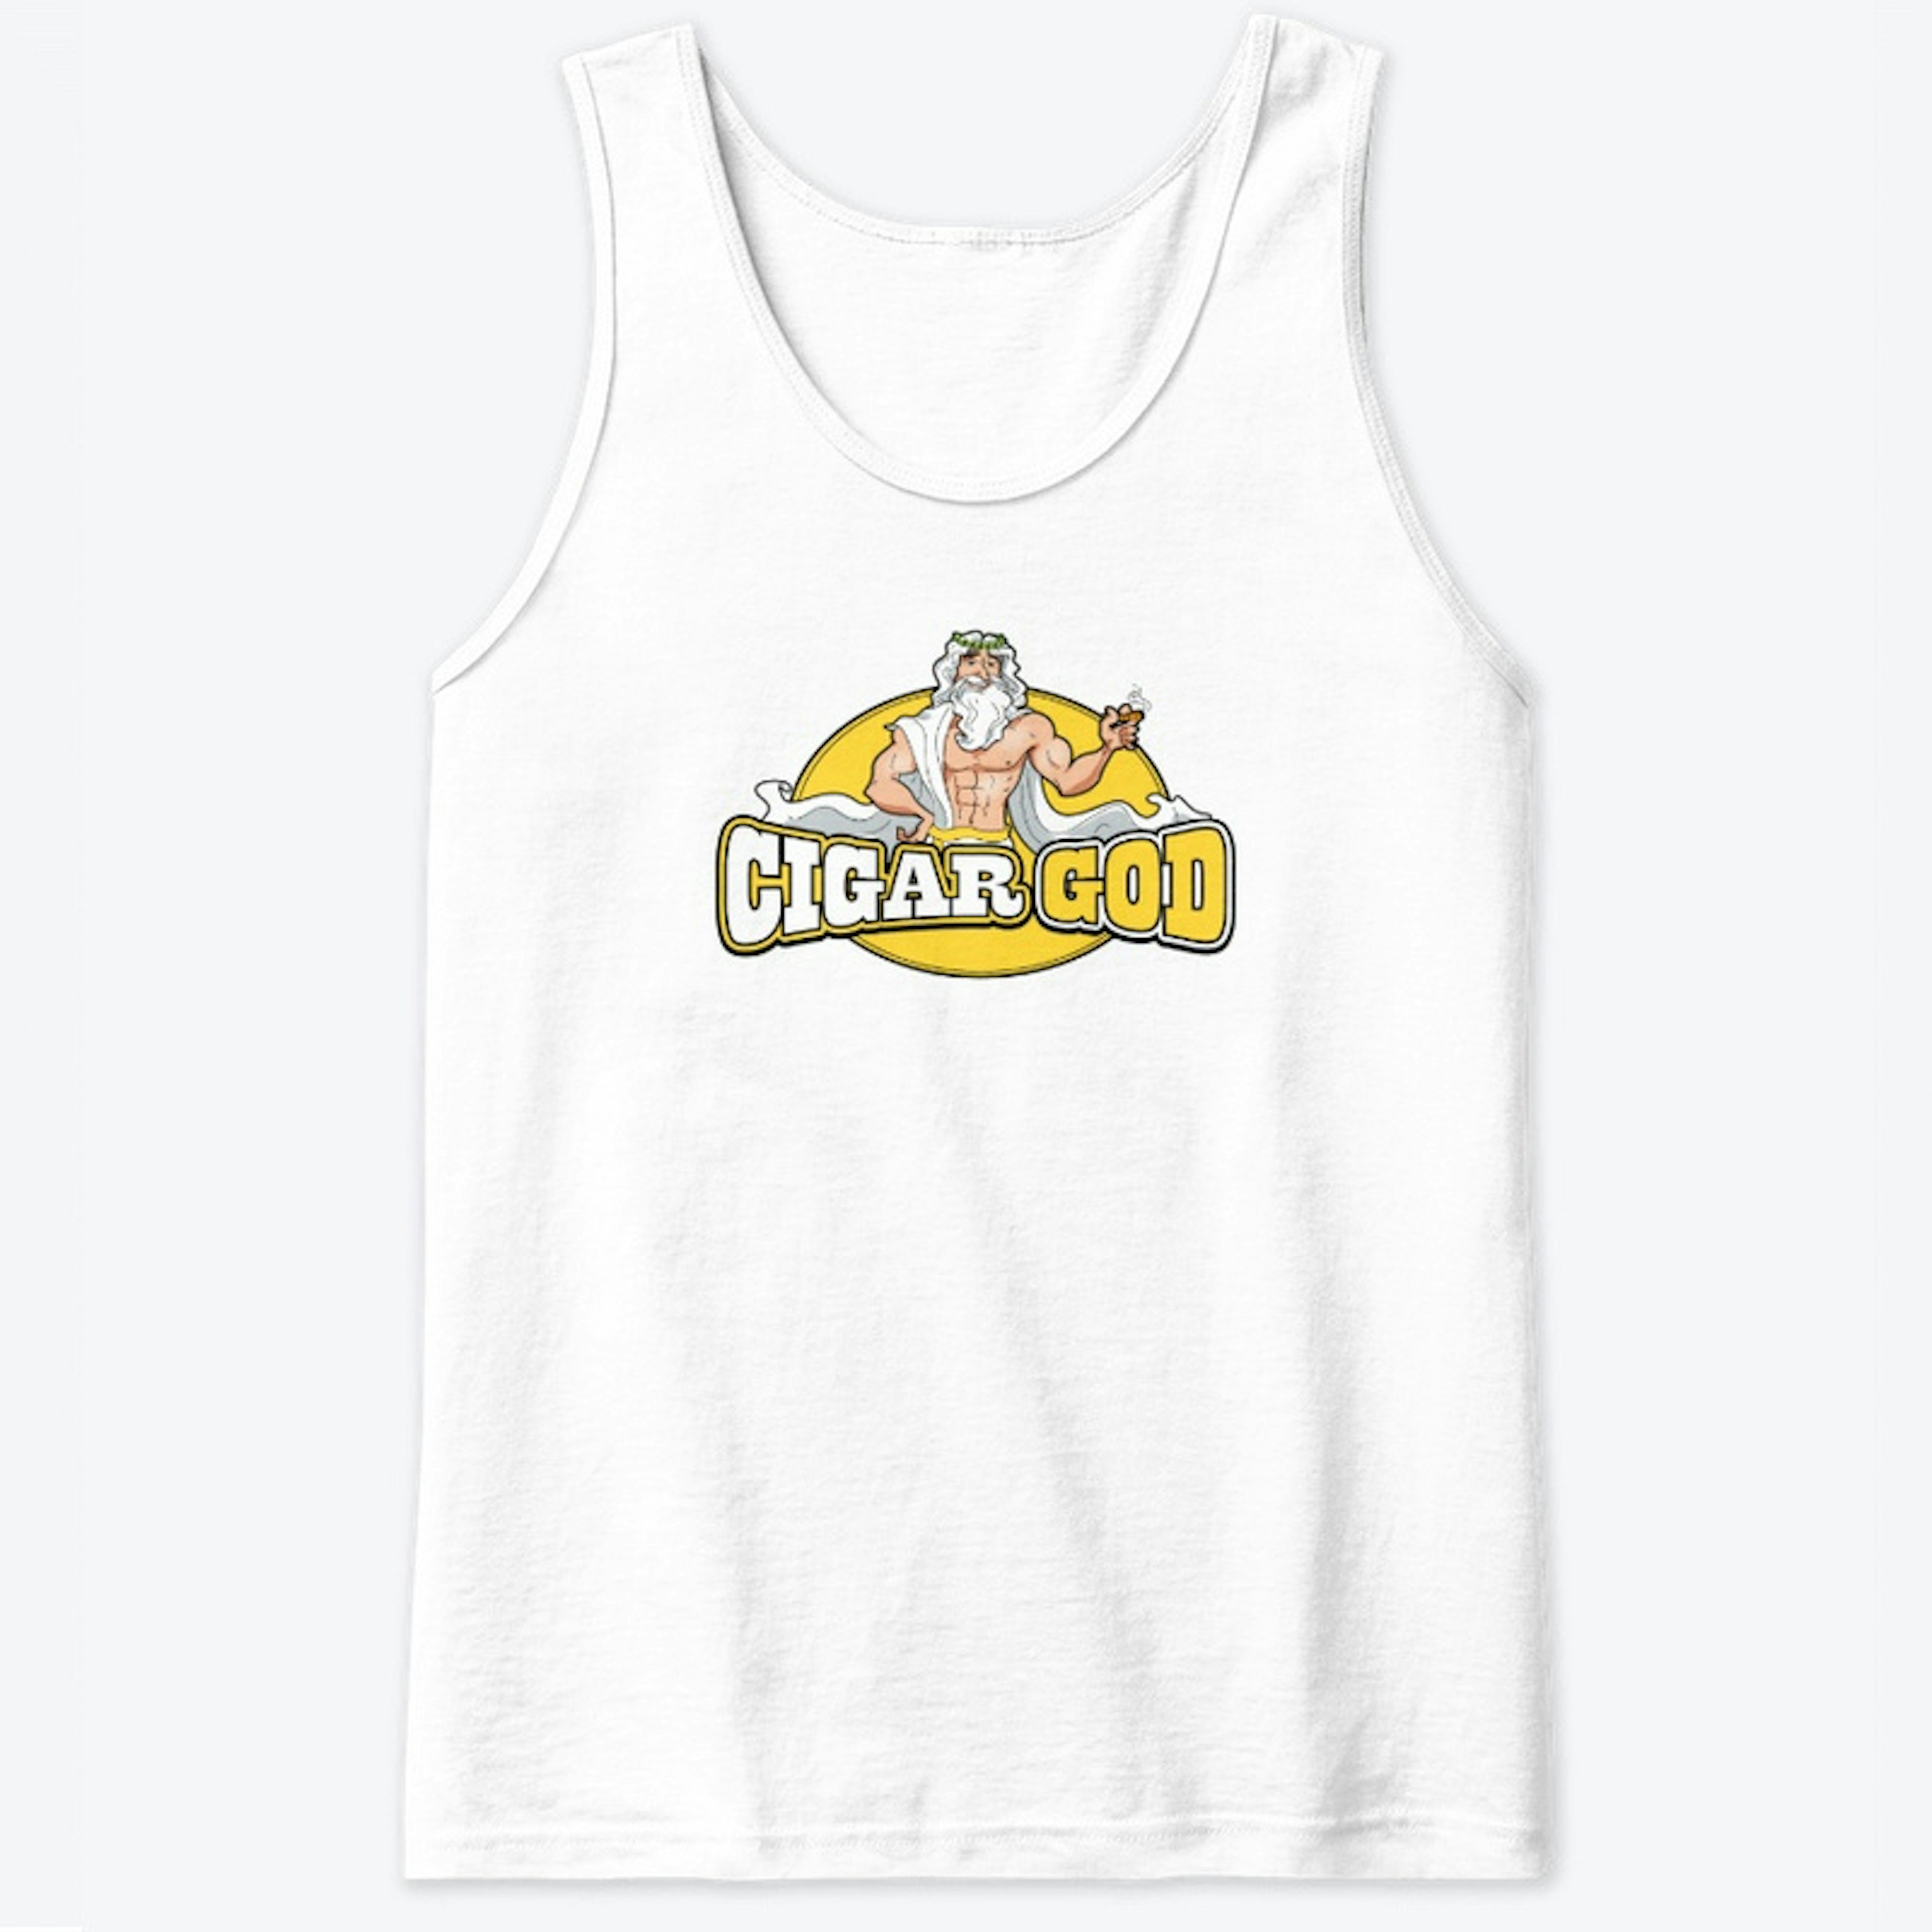 Cigar God